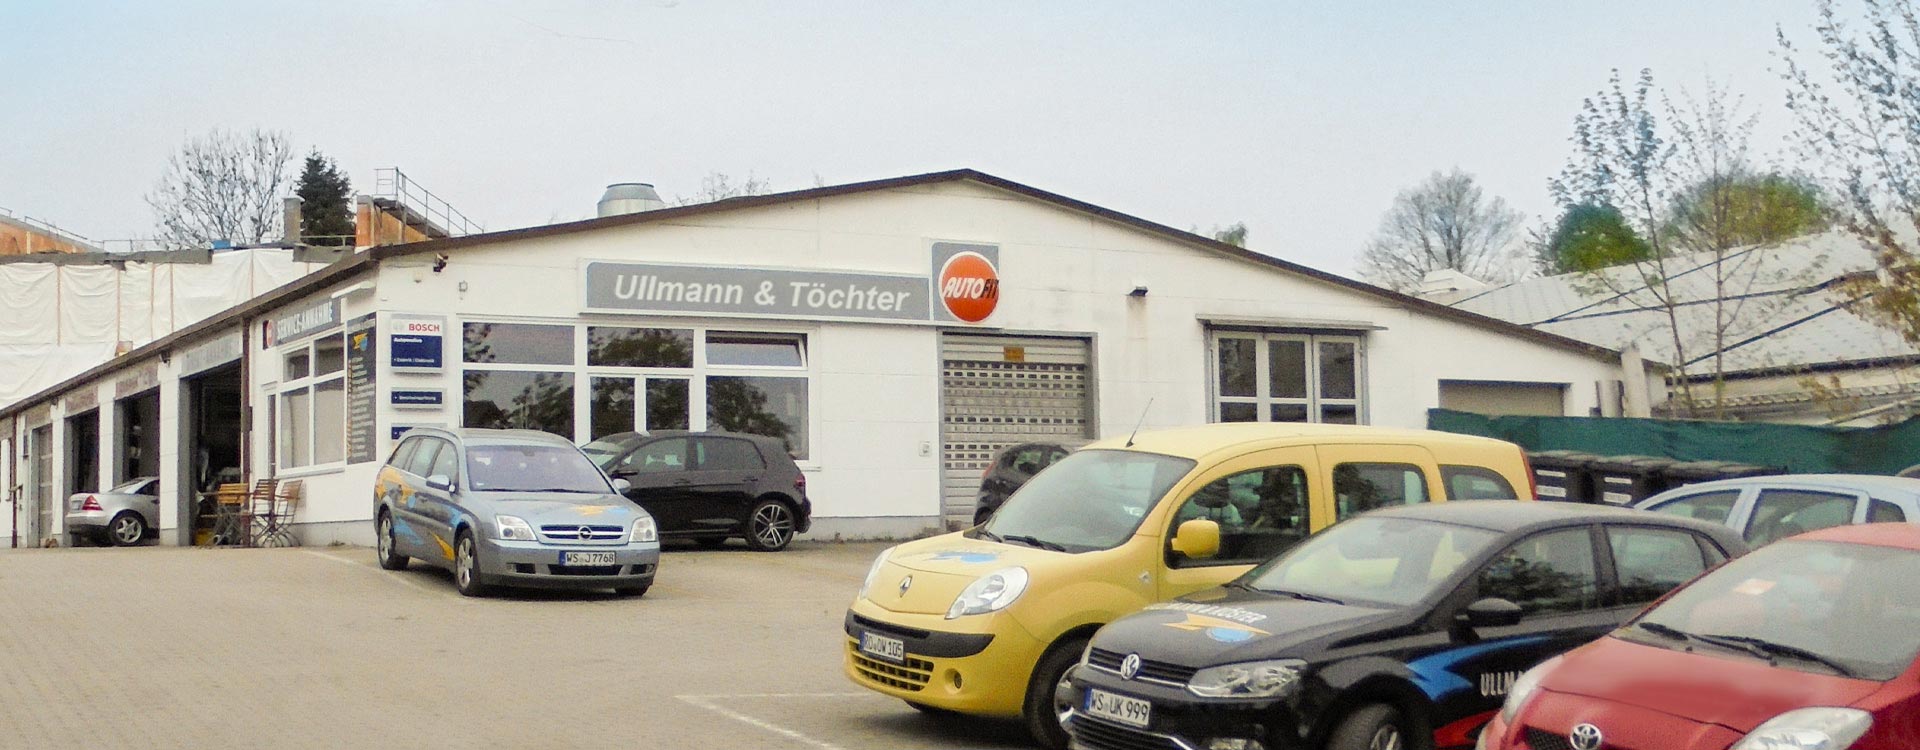 Ullmann & Töchter - Autowerkstatt